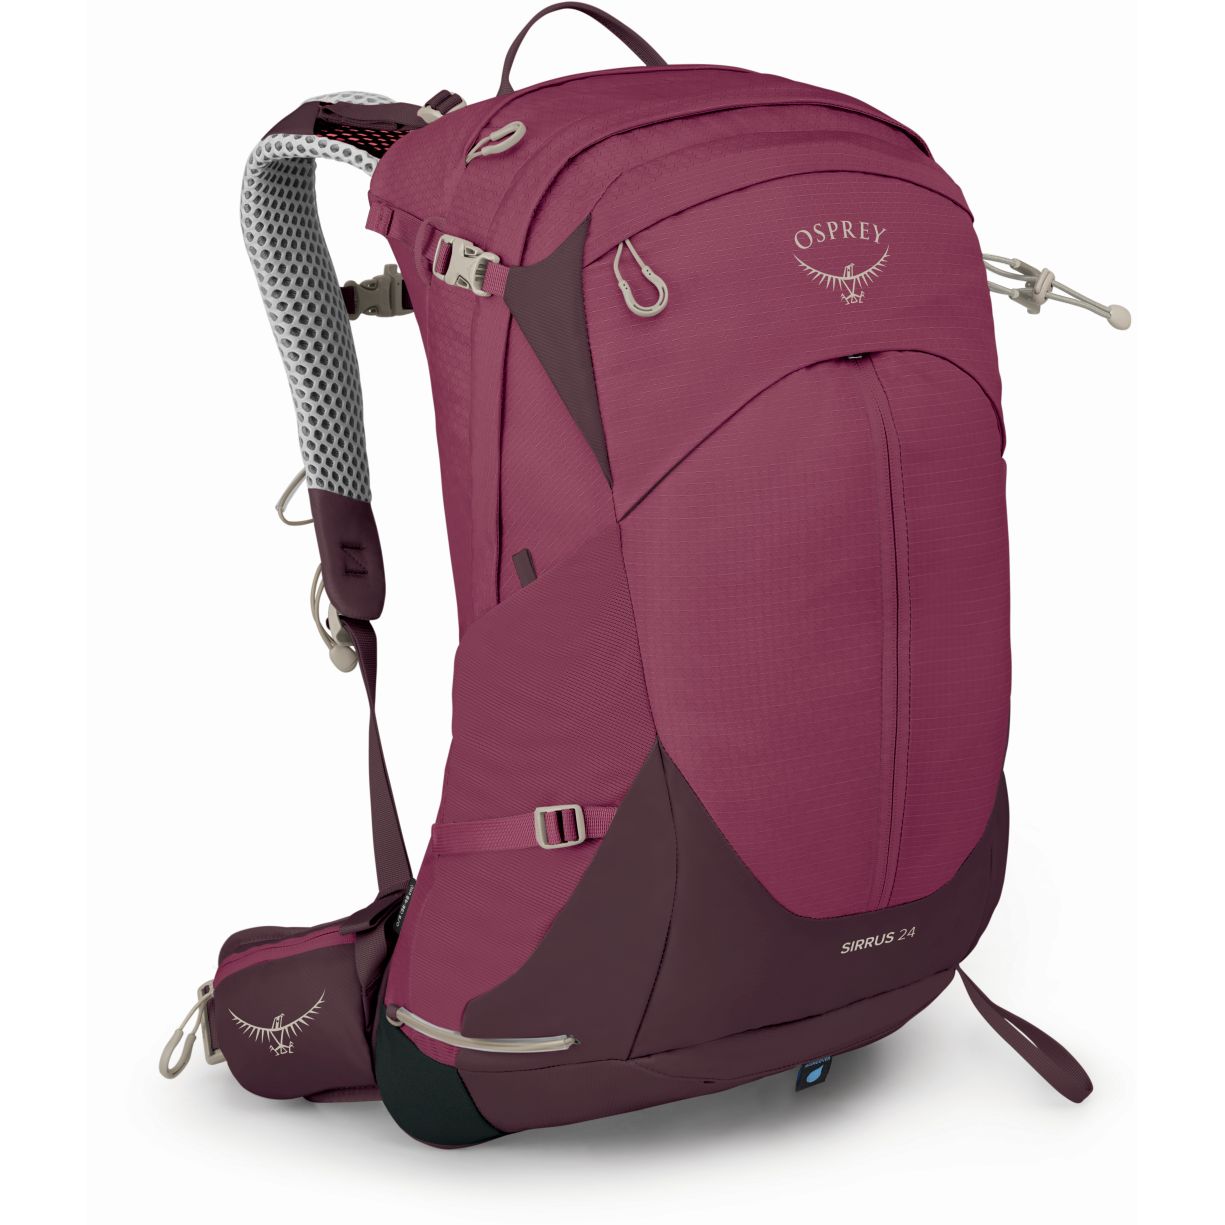 Produktbild von Osprey Sirrus 24 Rucksack Damen - Elderberry Purple/Chiru Tan